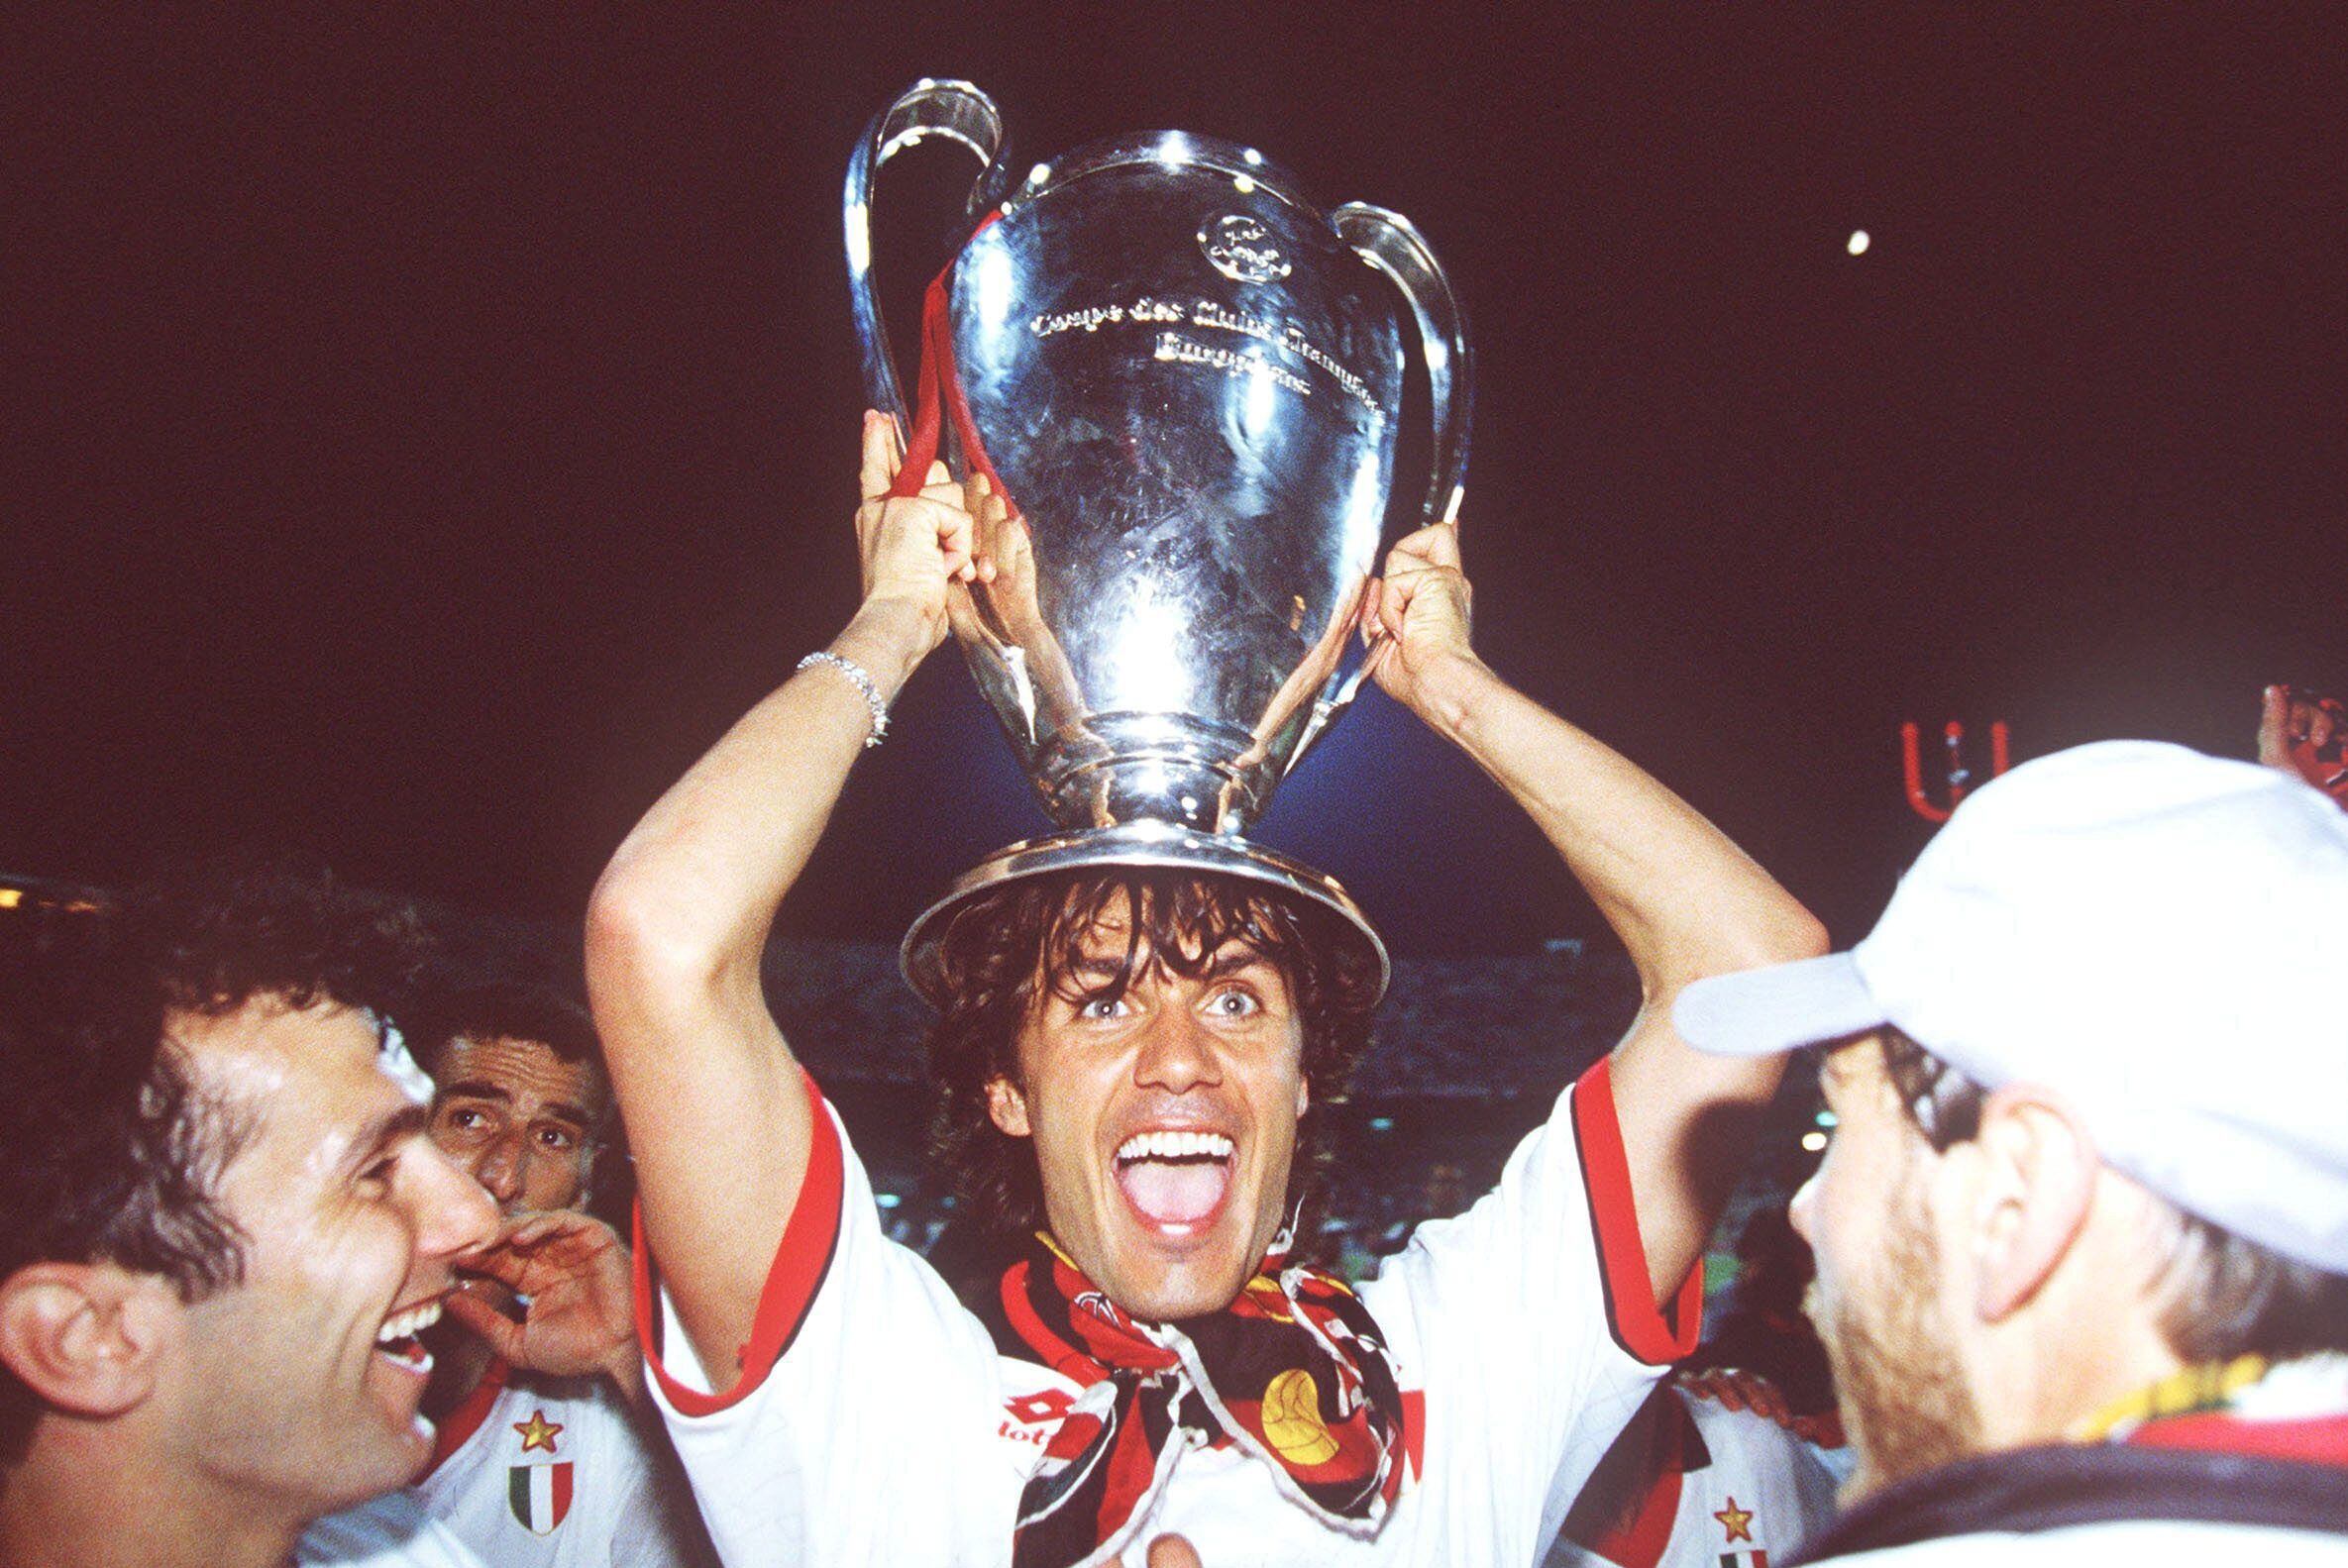 Paolo Maldini es uno de los pocos jugadores de esta lista que no pertenecen al Real Madrid. El ‘One Club Man’ del AC Milan ganó 5 Champions League, tres de ellas cuando todavía eran denominadas como “Copas de Europa”. El defensor italiano fue titular en todas ellas ante: Steaua Bucarest (1988-89, 4-0), Benfica (1989-90, 1-0), Barcelona (1993-94, 4-0), Juventus de Turín [2002-03, (2) 0-0 (3)] y Liverpool (2006-07, 2-1). Esta última, frente a los ingleses, sirvió para redimirse de la perdida dos años atrás en Estanbul.